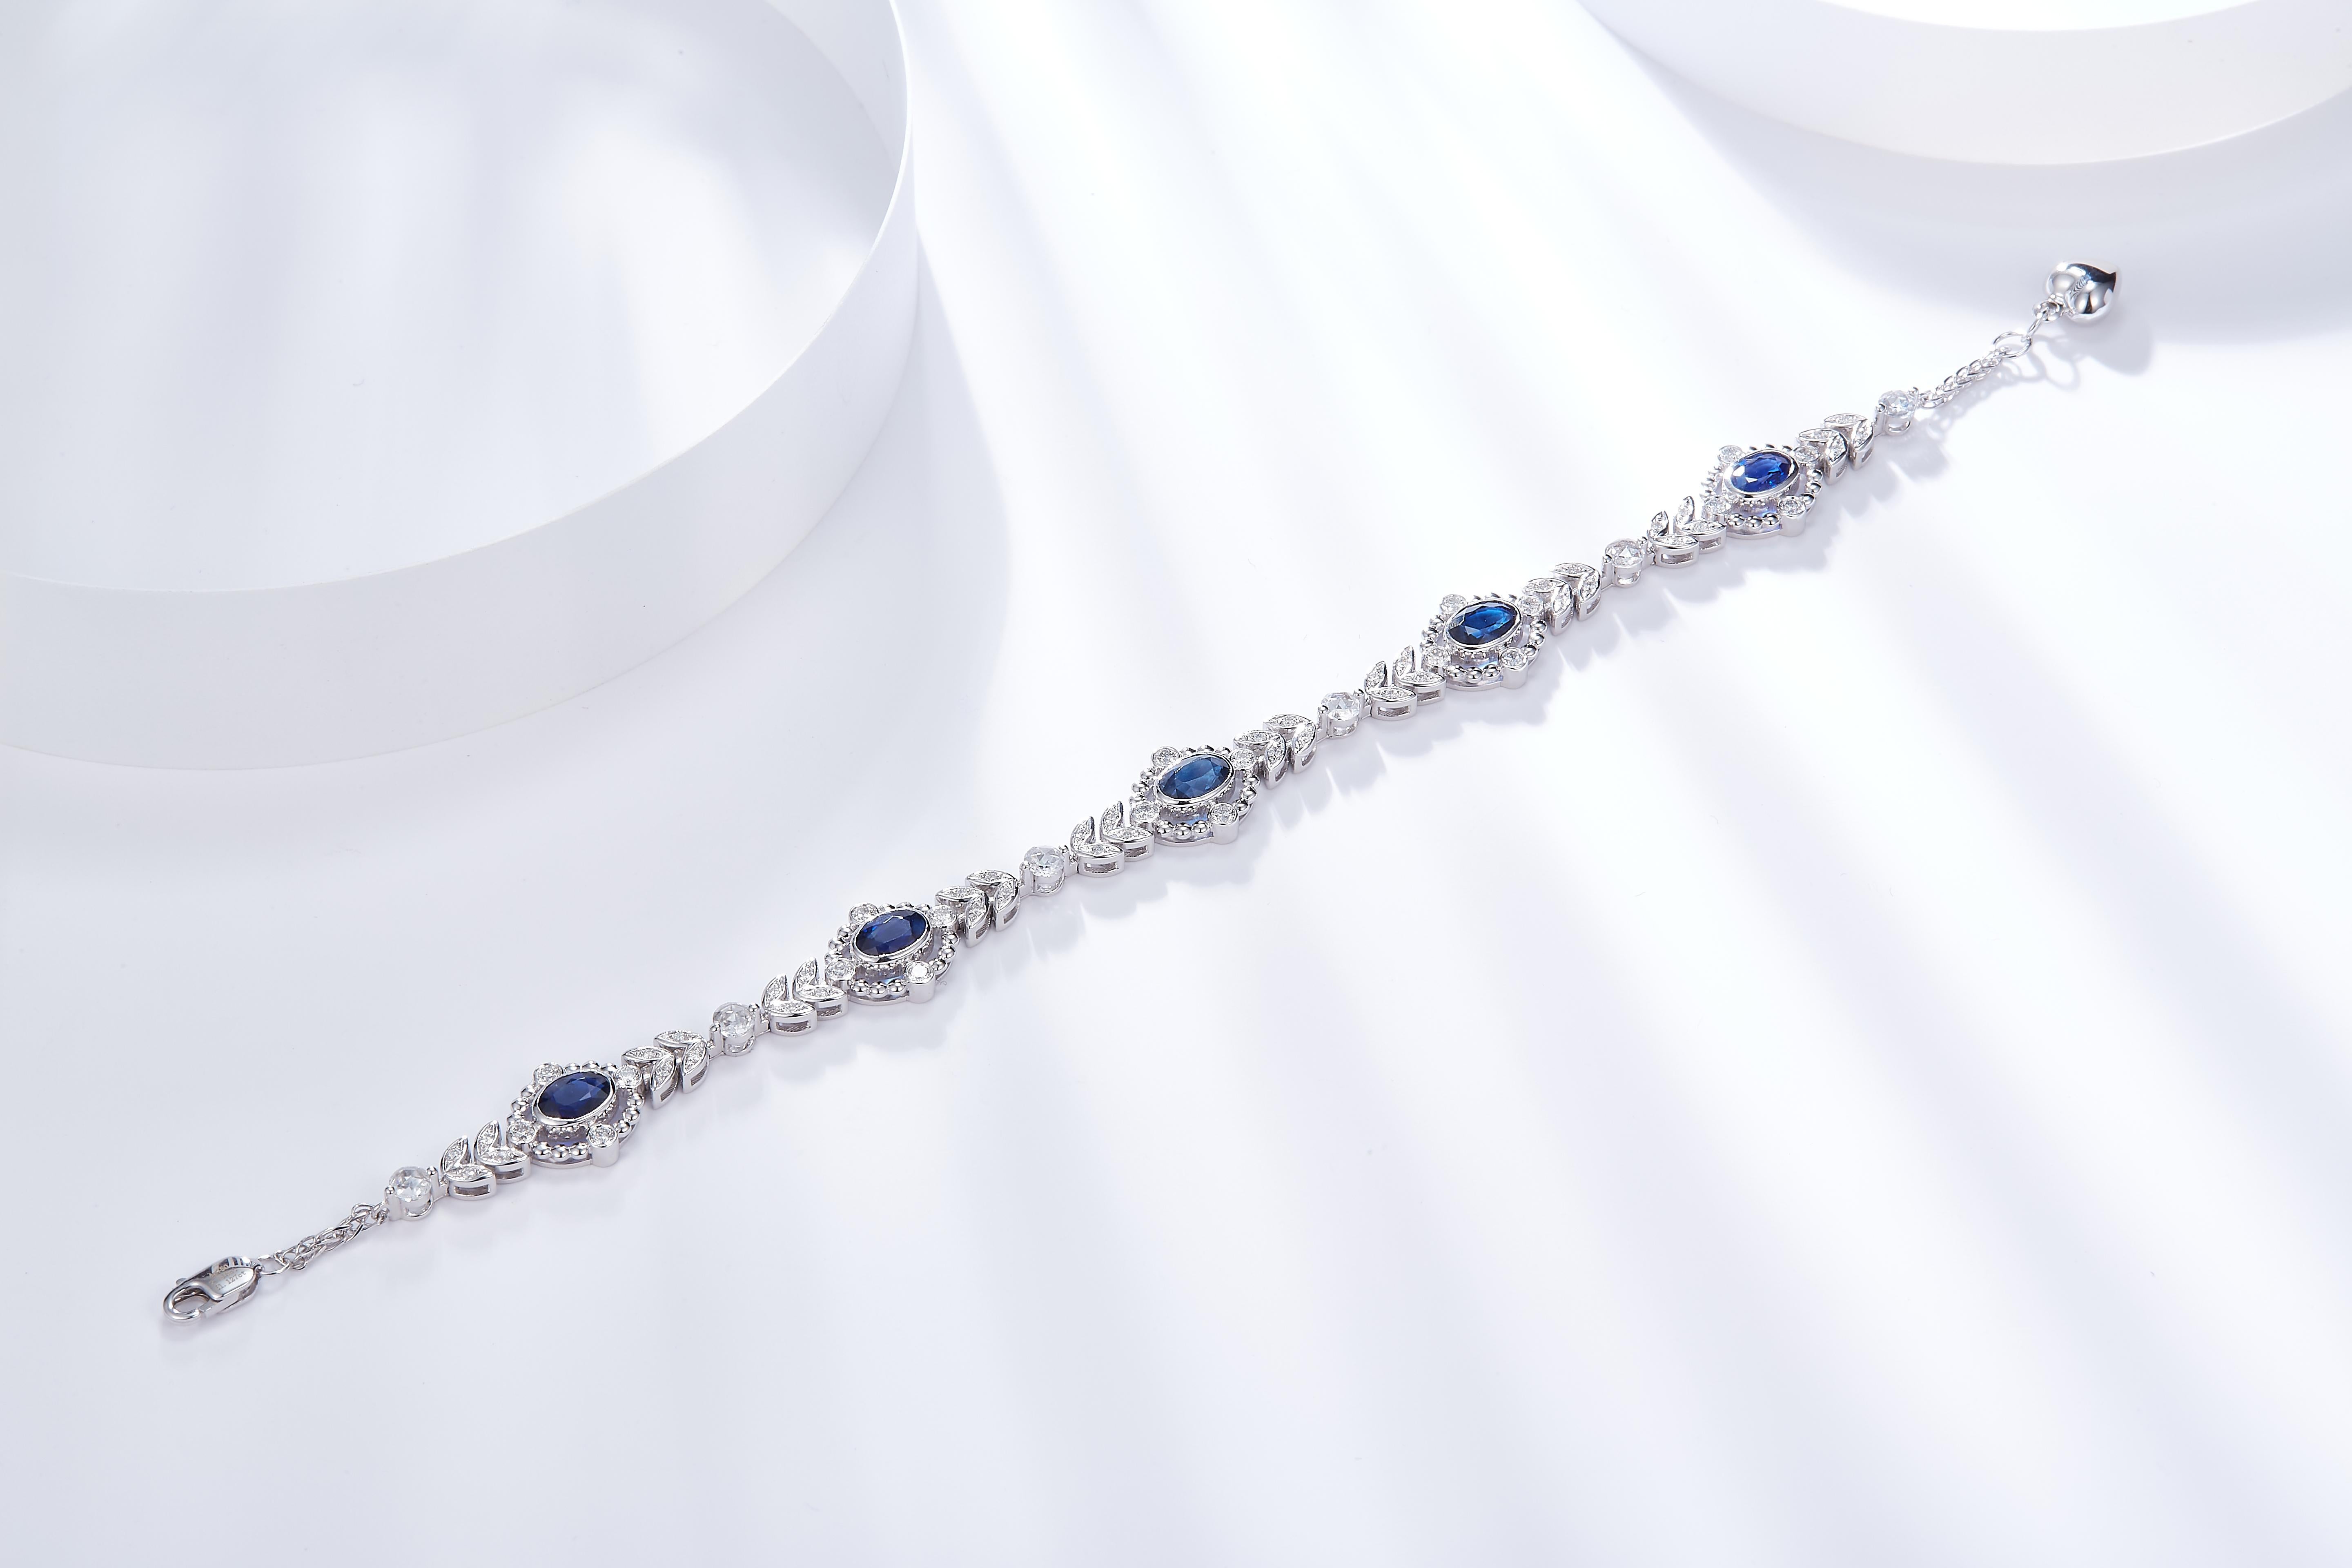 Dies ist ein Armband im edwardianischen Stil. Er ist mit 5 ovalen königsblauen Saphiren besetzt, die jeweils von einem Kreis aus Diamanten umgeben sind. Er verzweigt sich dann mit einem Blattmotiv, das durch einen einzelnen runden Diamanten